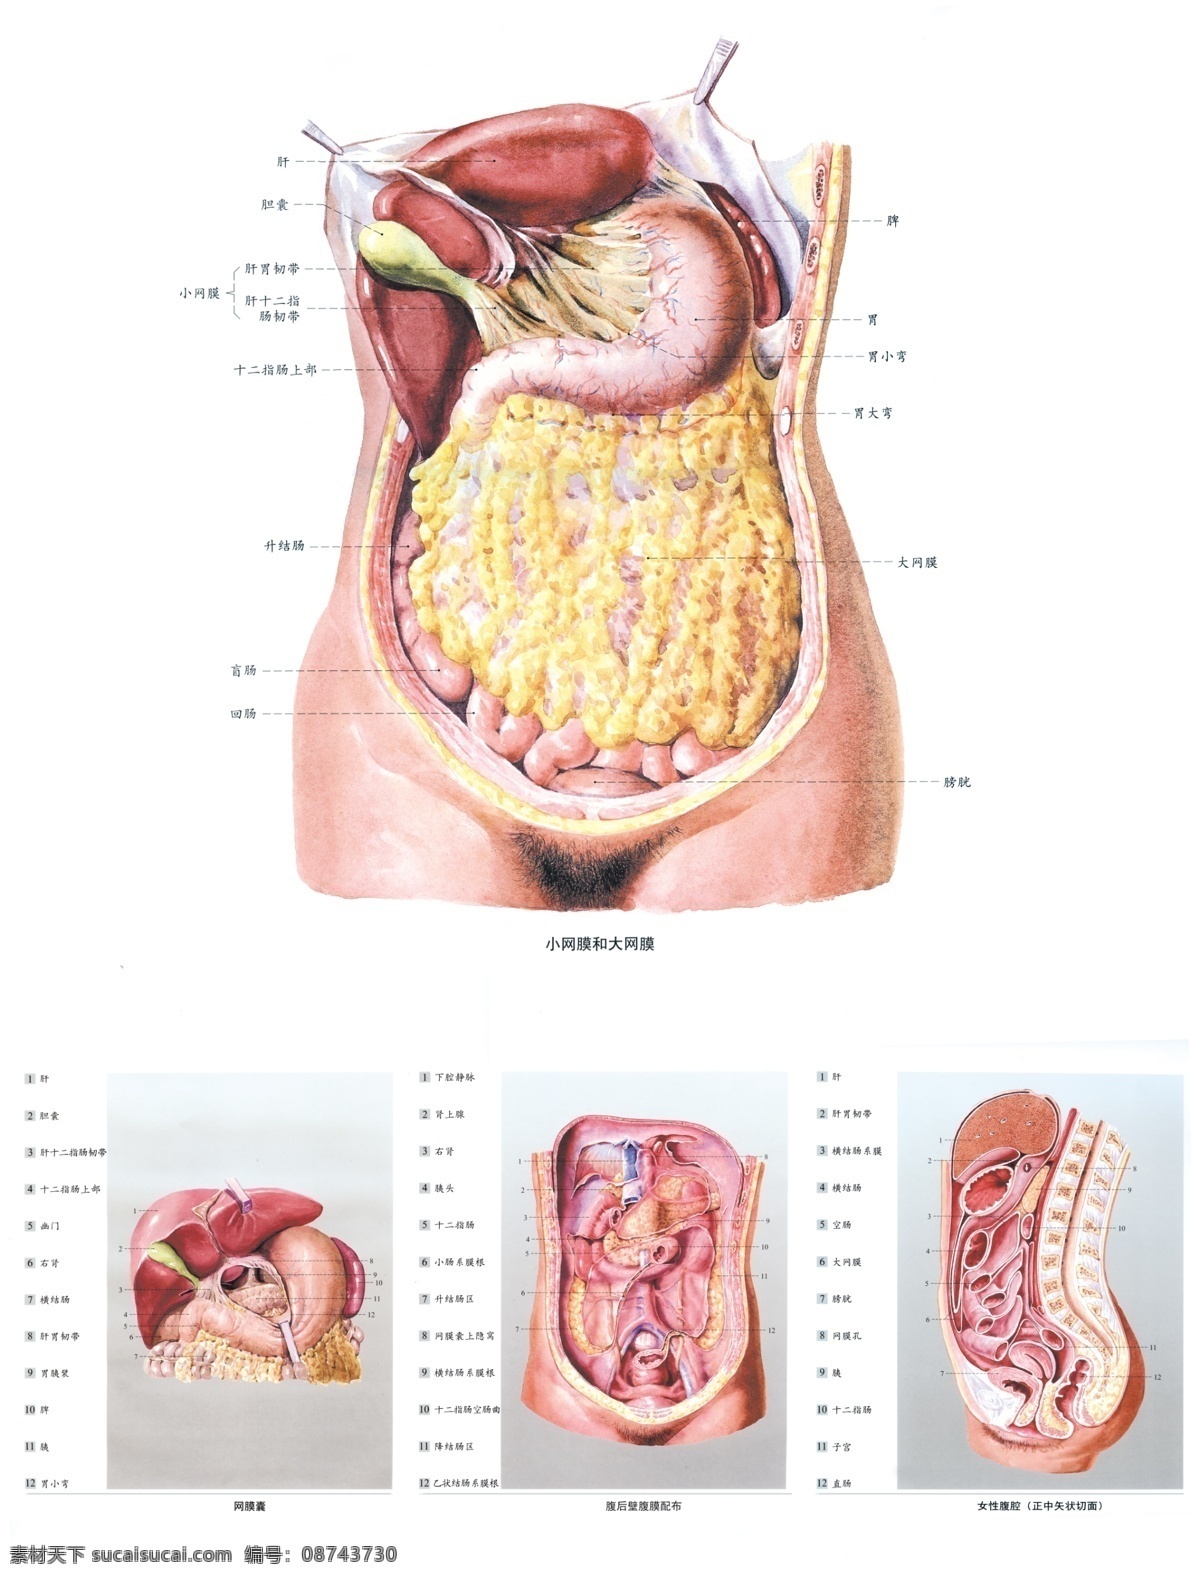 人体解剖图 中医 经络图 内脏分部图 人体构造图 医学图 人体内脏图 医学研究图 展板模板 广告设计模板 源文件